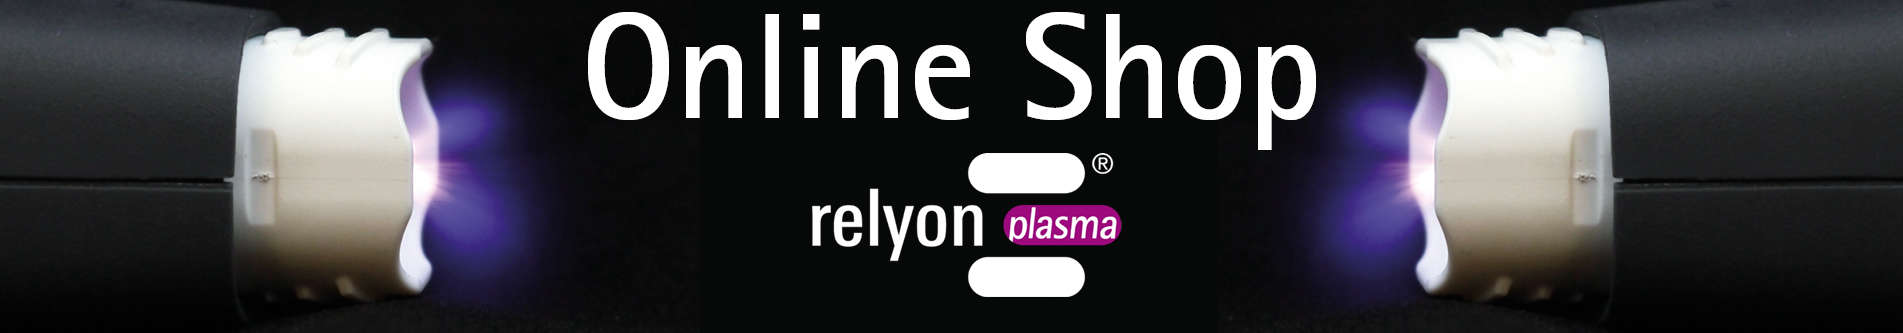 relyon plasma Online Shop